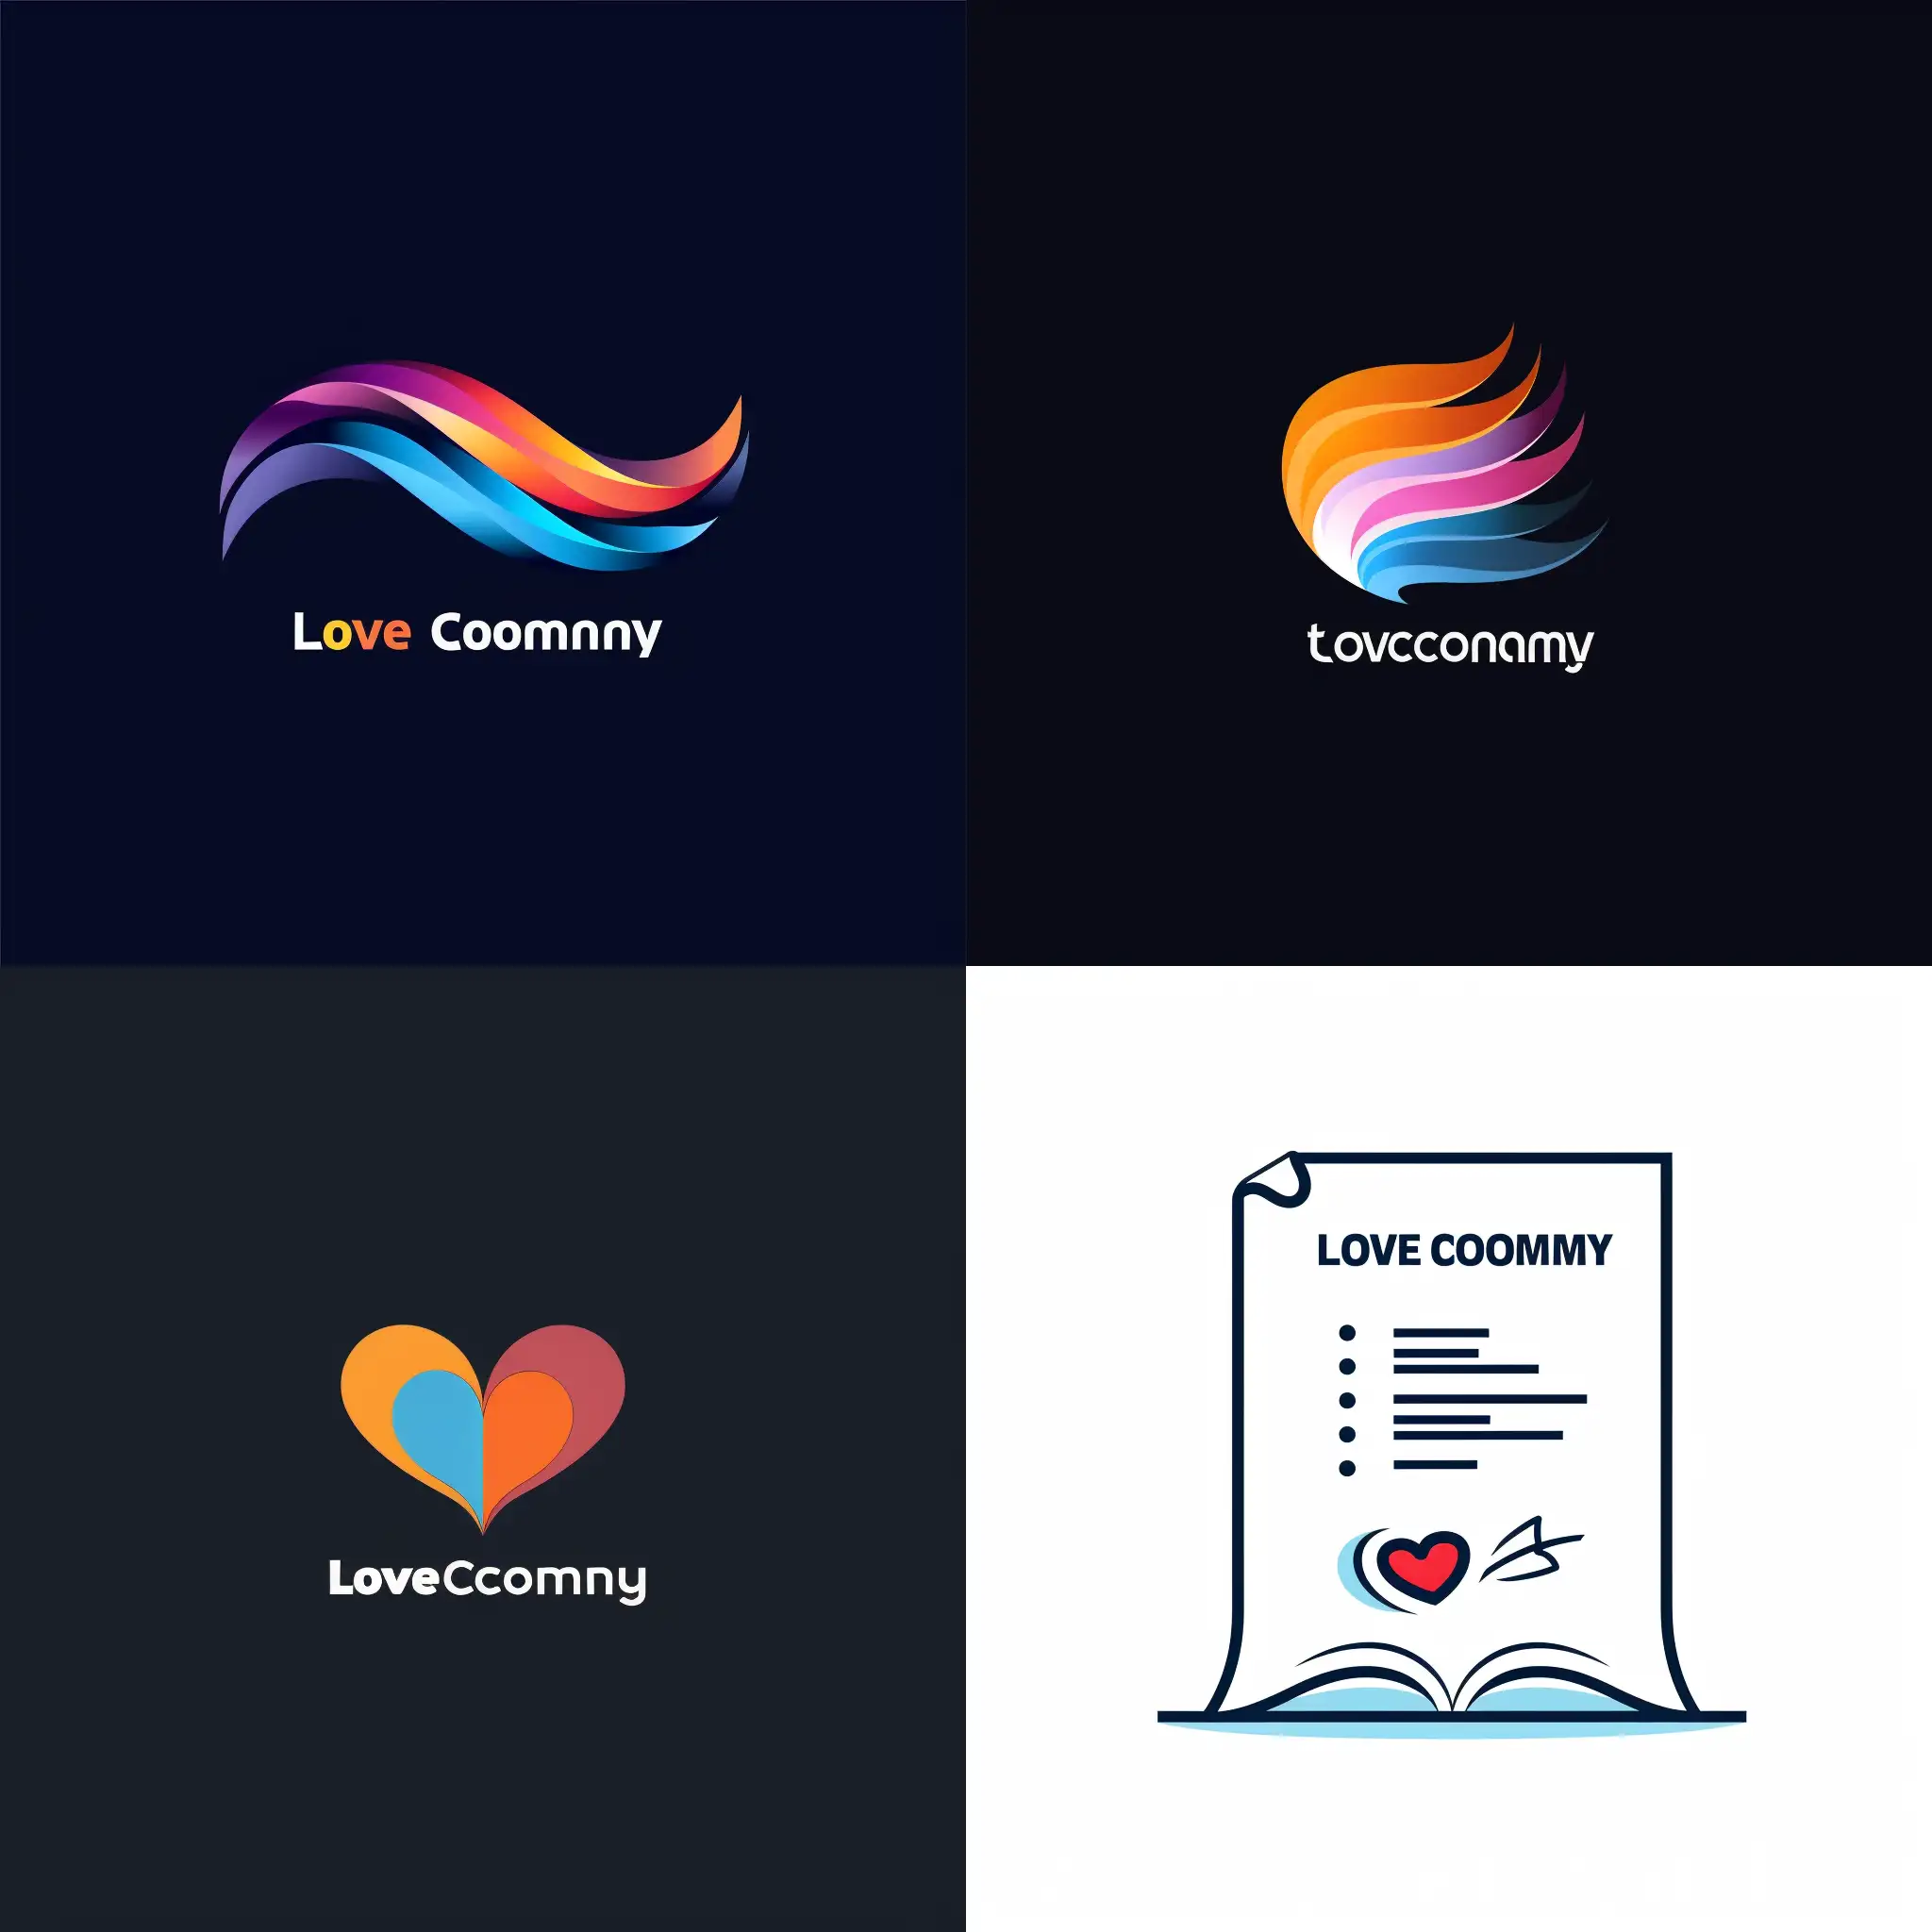 Нужно создать логотип для компании которая занимается электронным документооборотом в интернете, компания называется LoveCompany